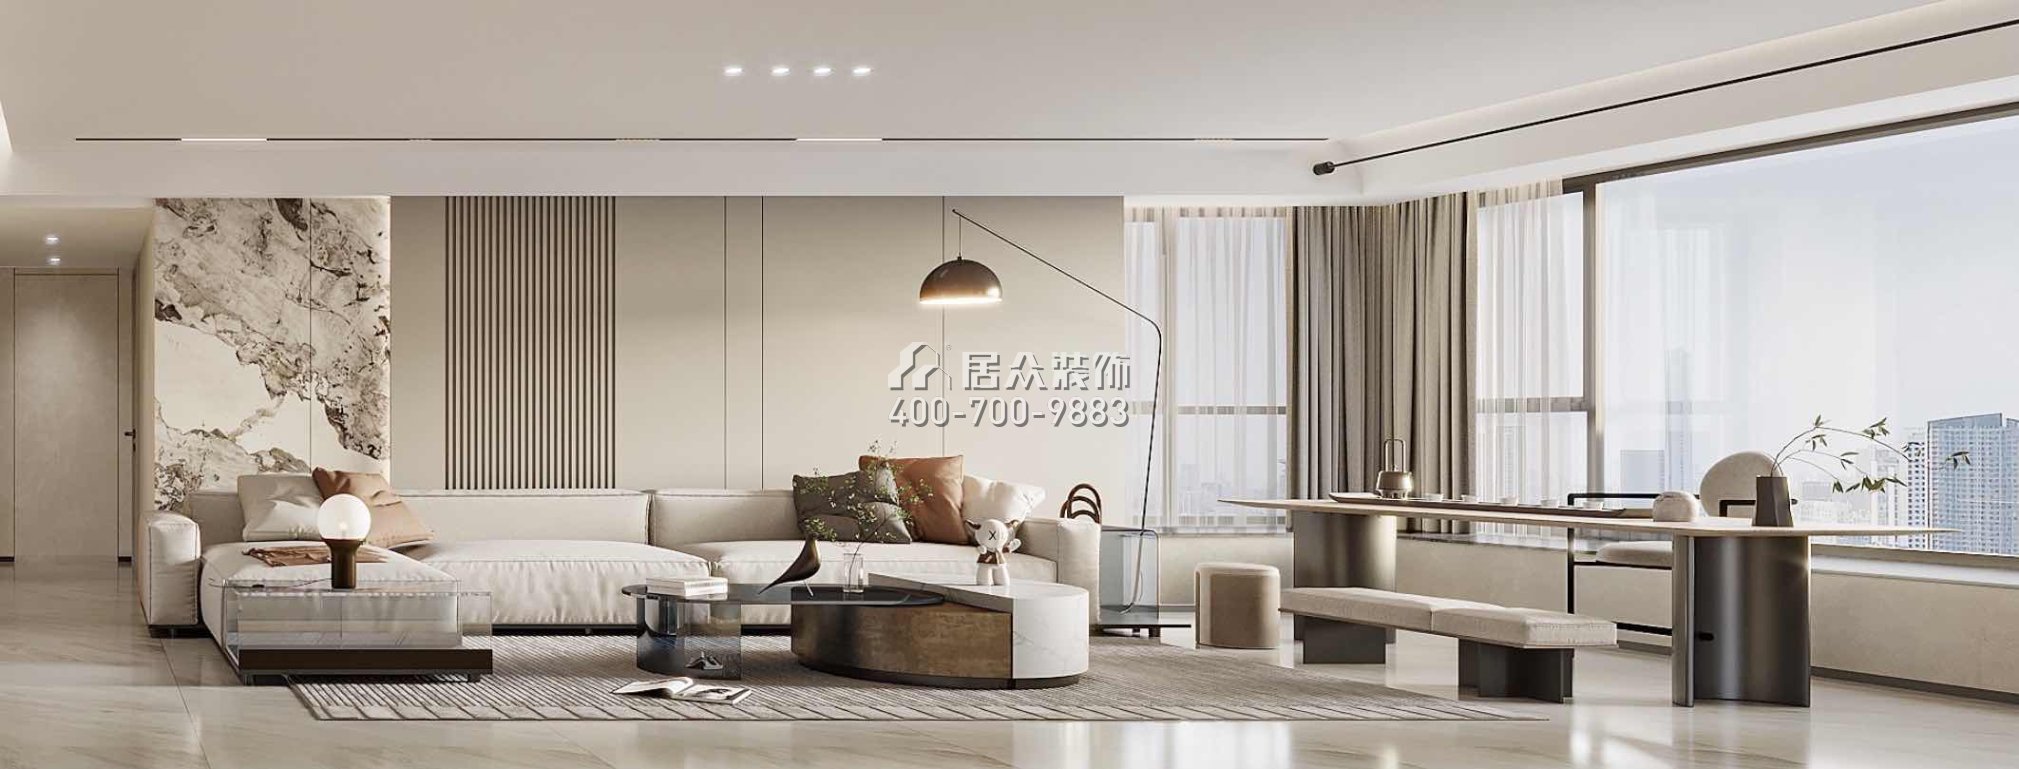 華發新城189平方米現代簡約風格平層戶型裝修效果圖